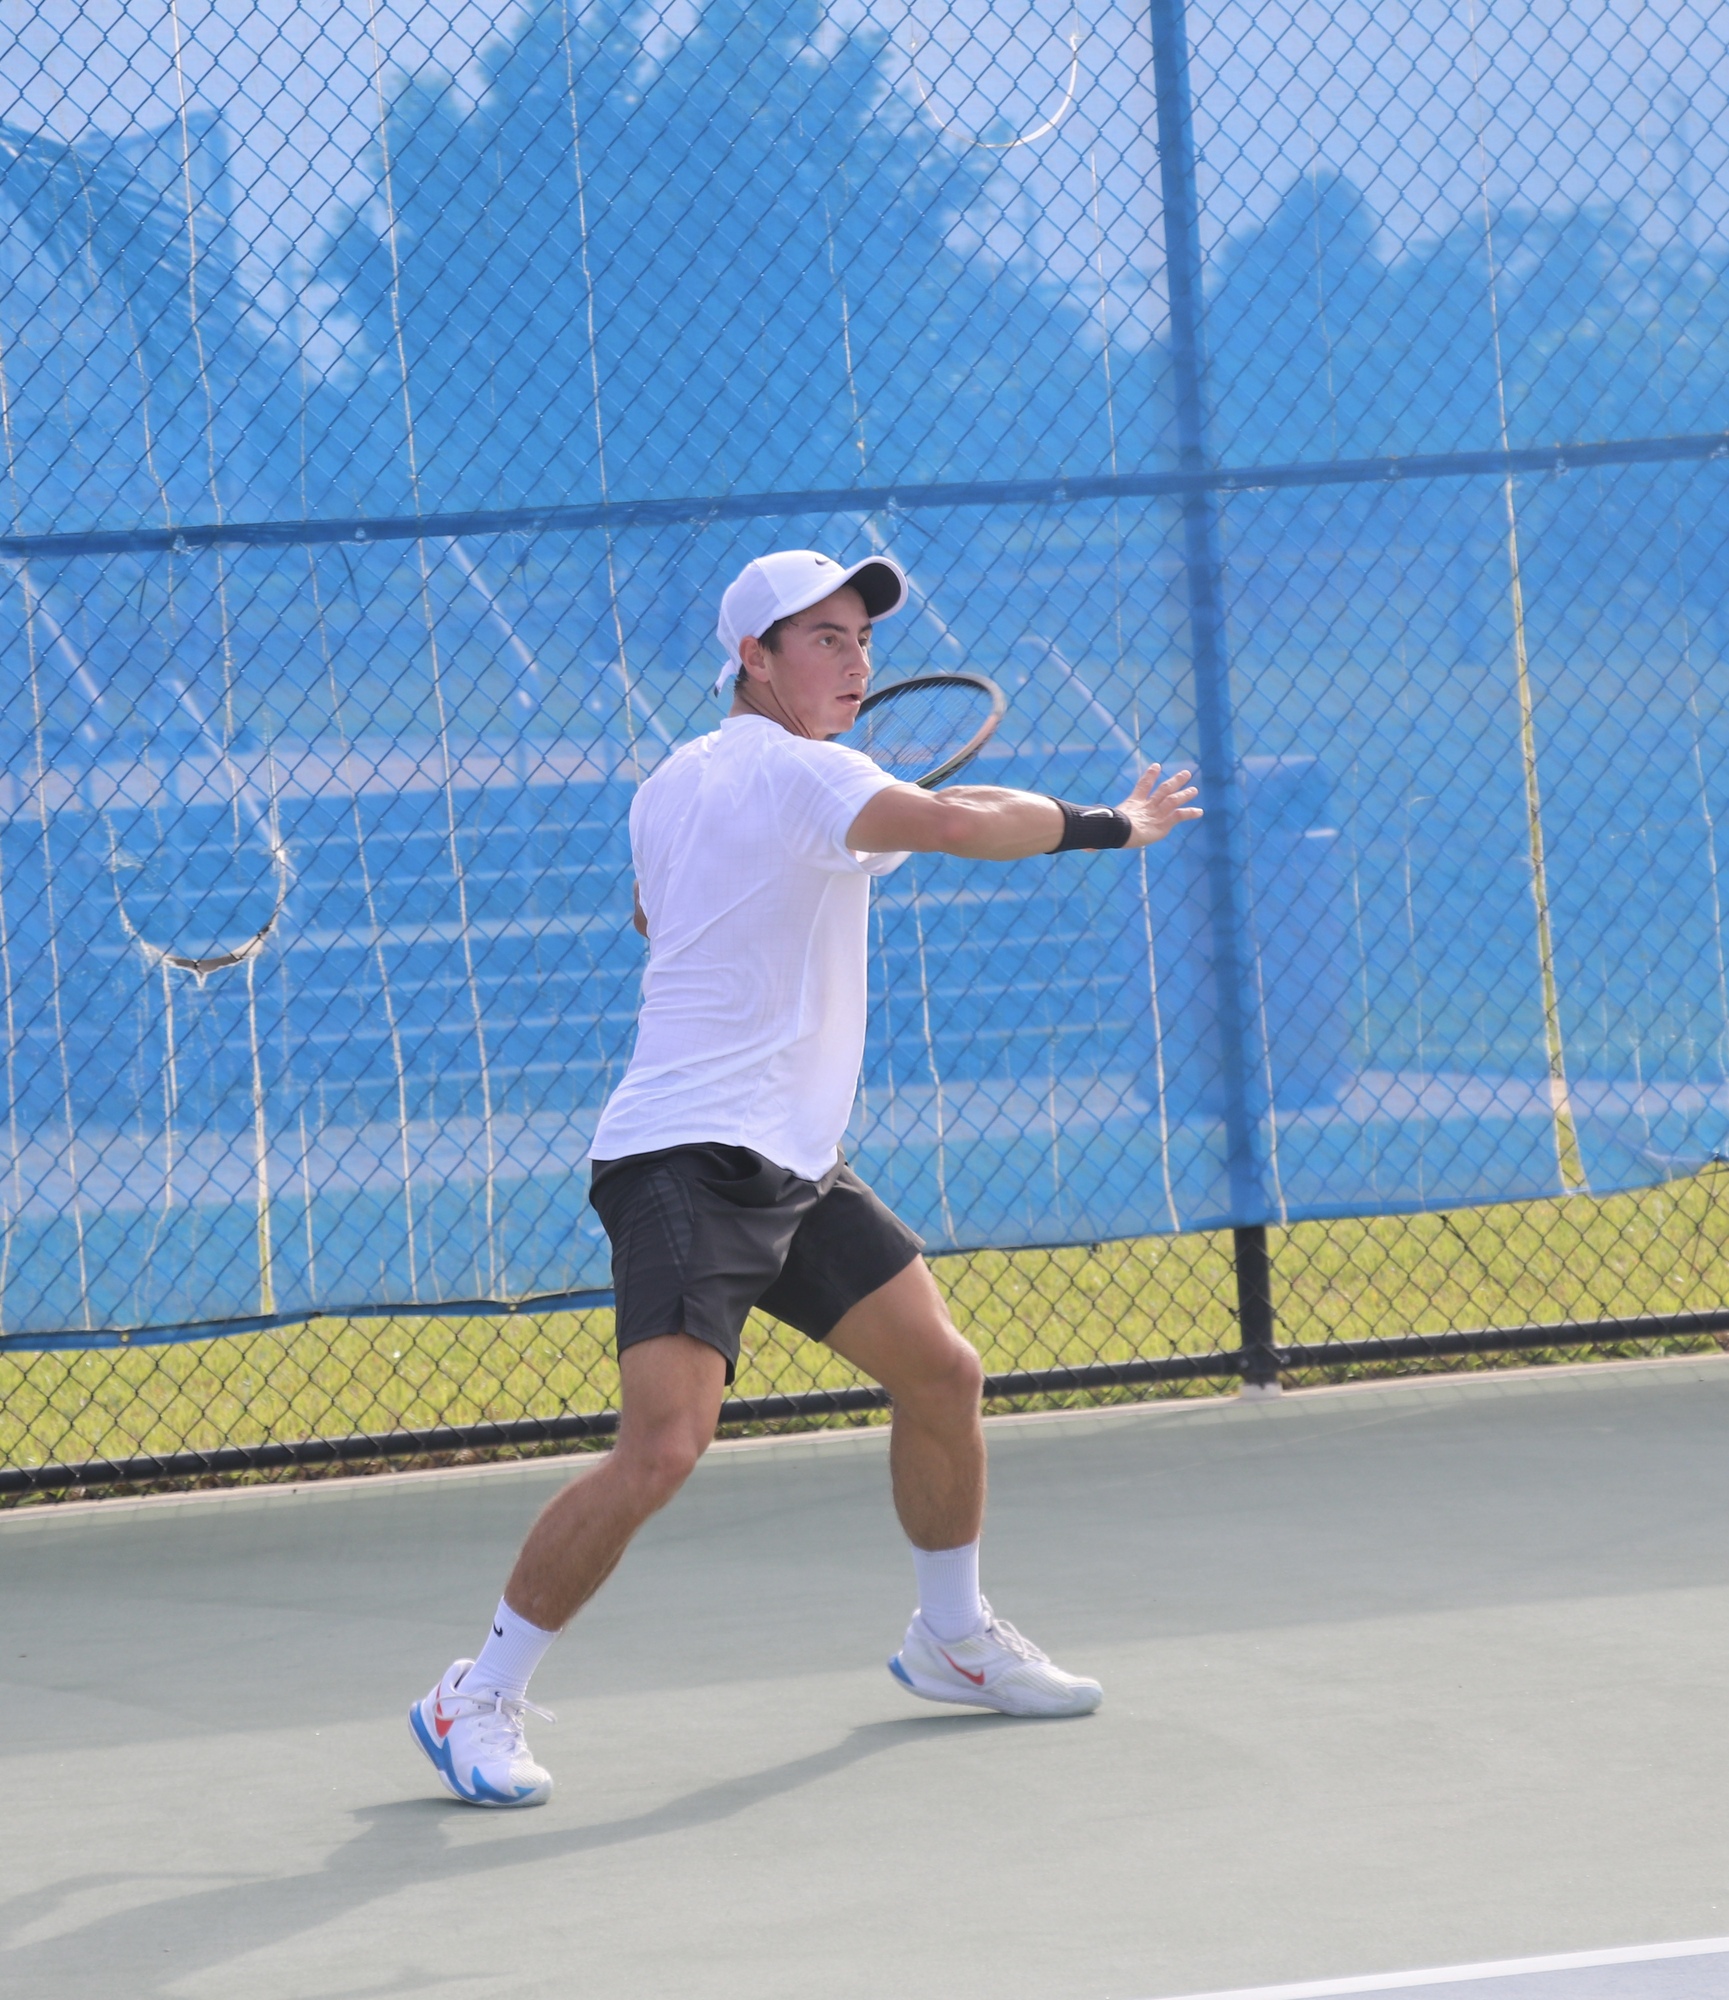 Luis P. teaches tennis lessons in West Palm Beach, FL